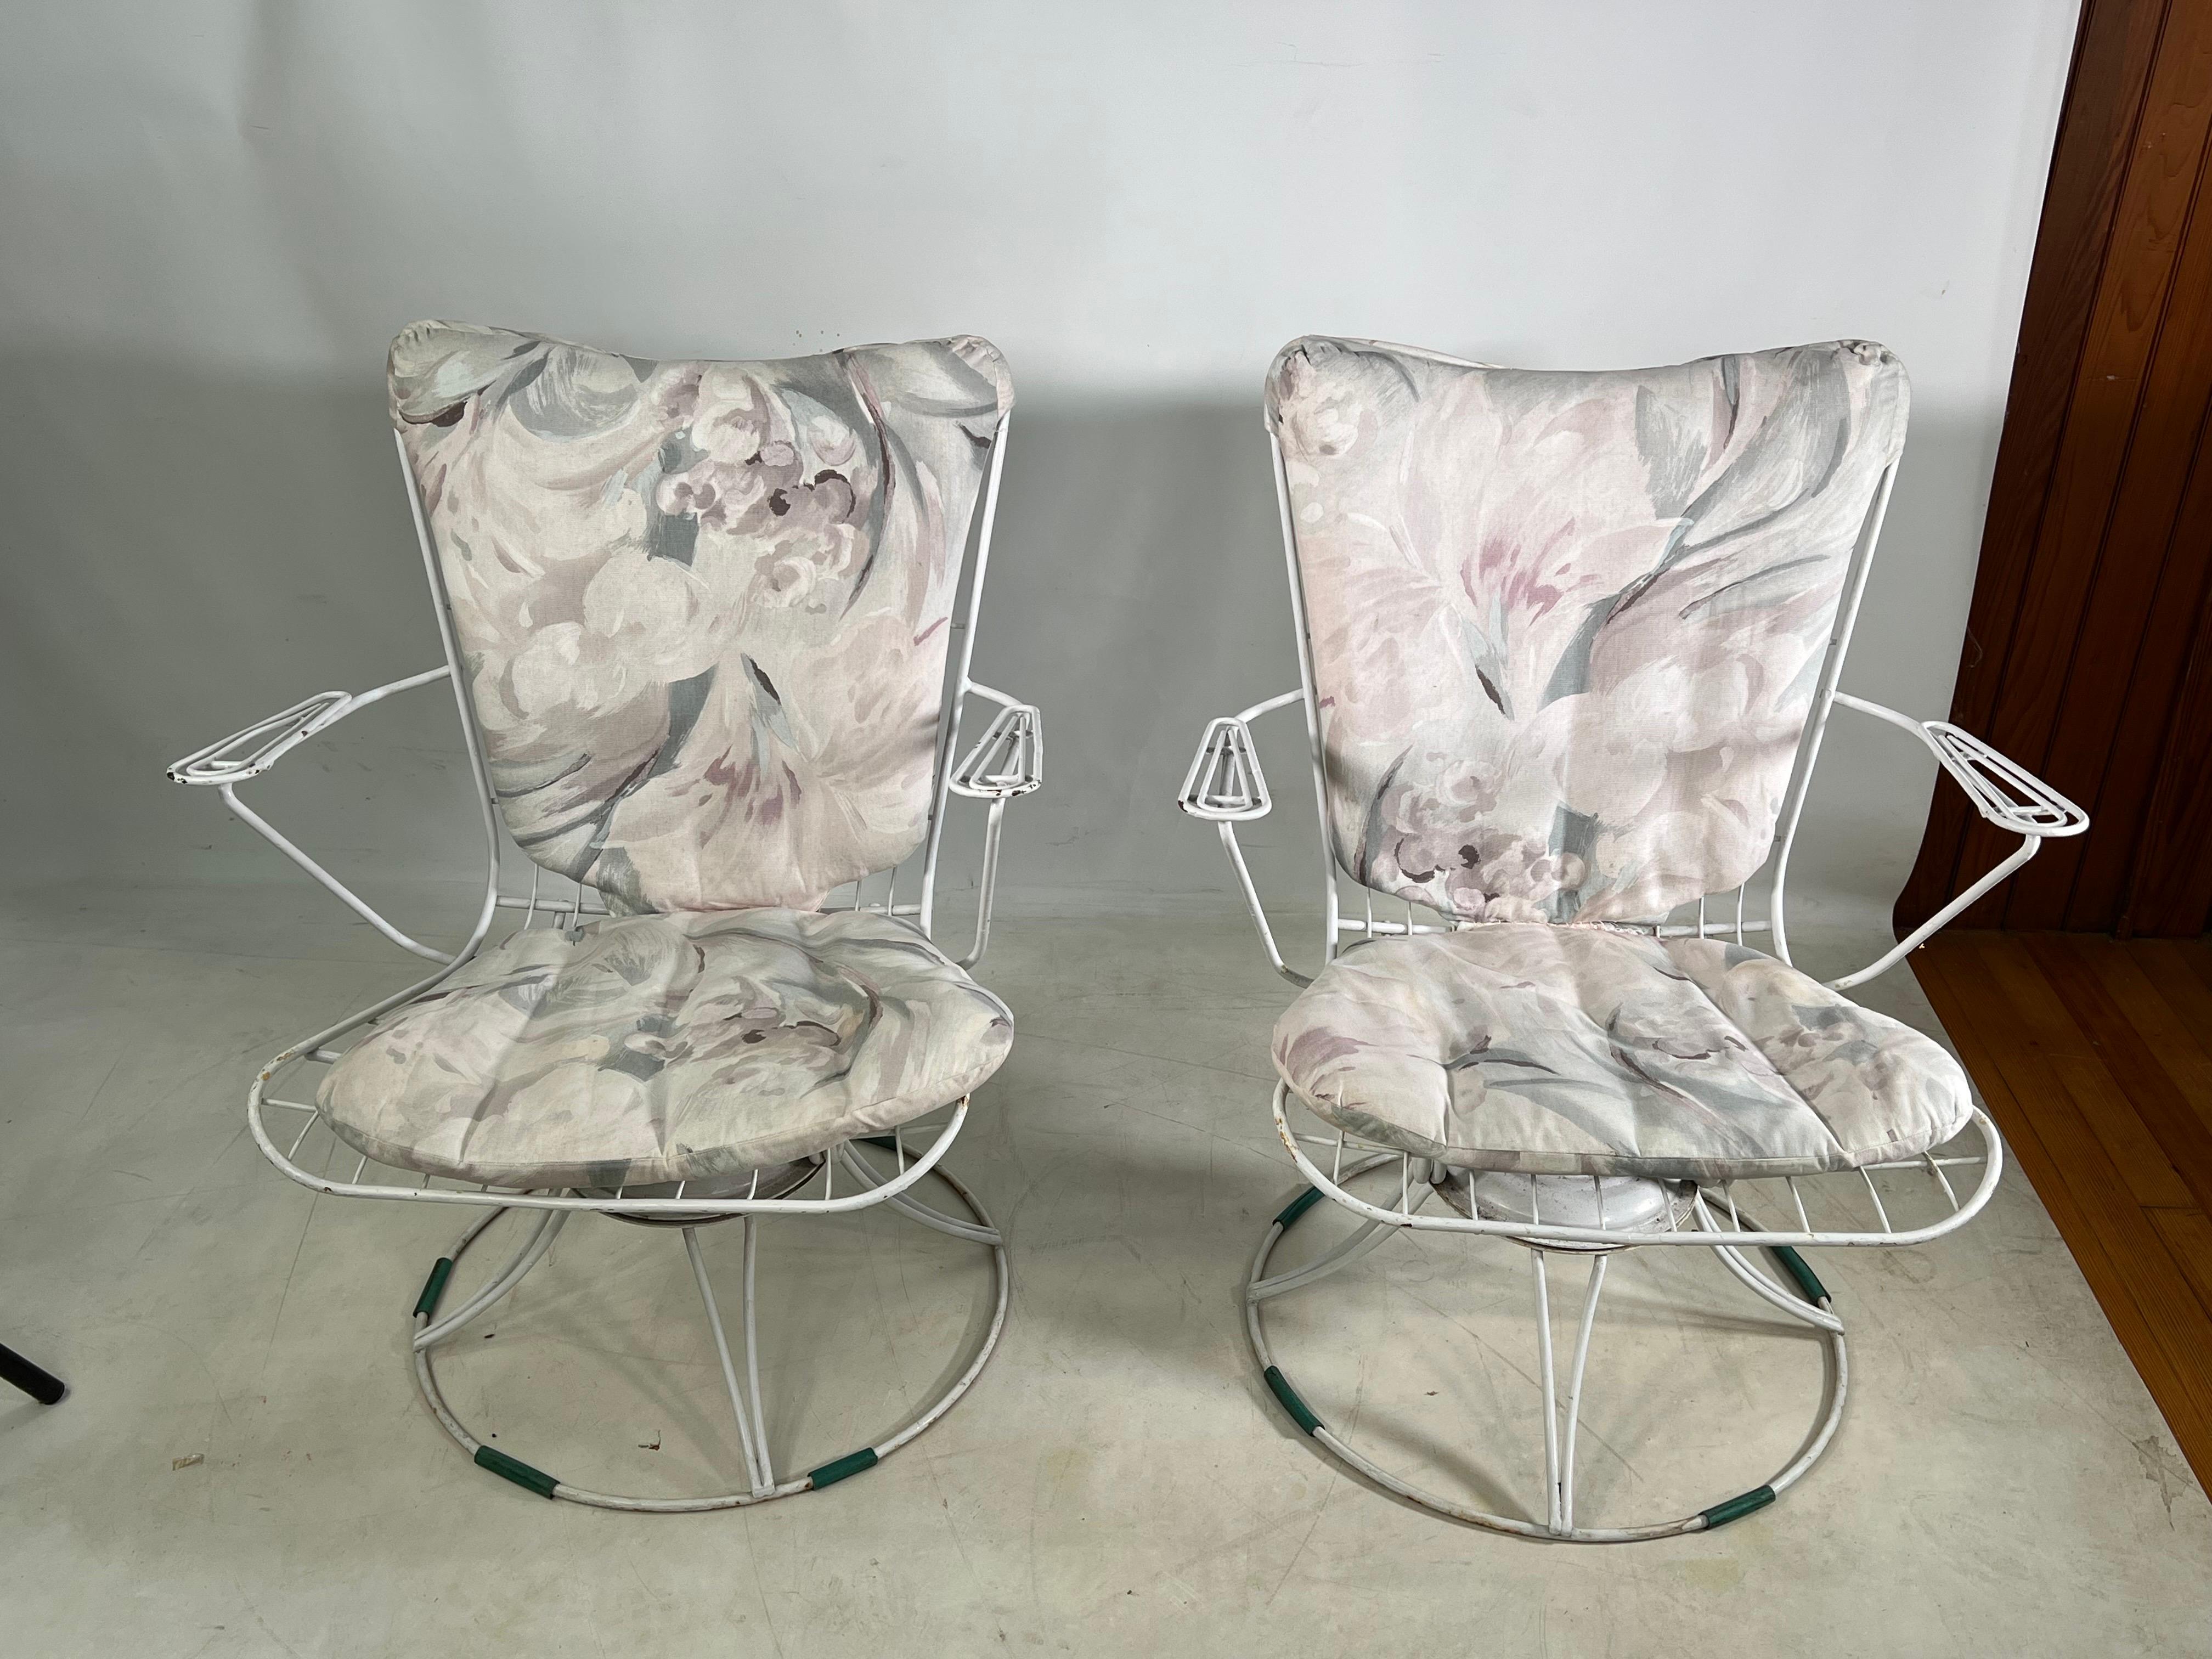 Toller Satz original Homecrest Drahtstühle, die Stühle sind aus CastIron und kommen mit zwei Kissen.